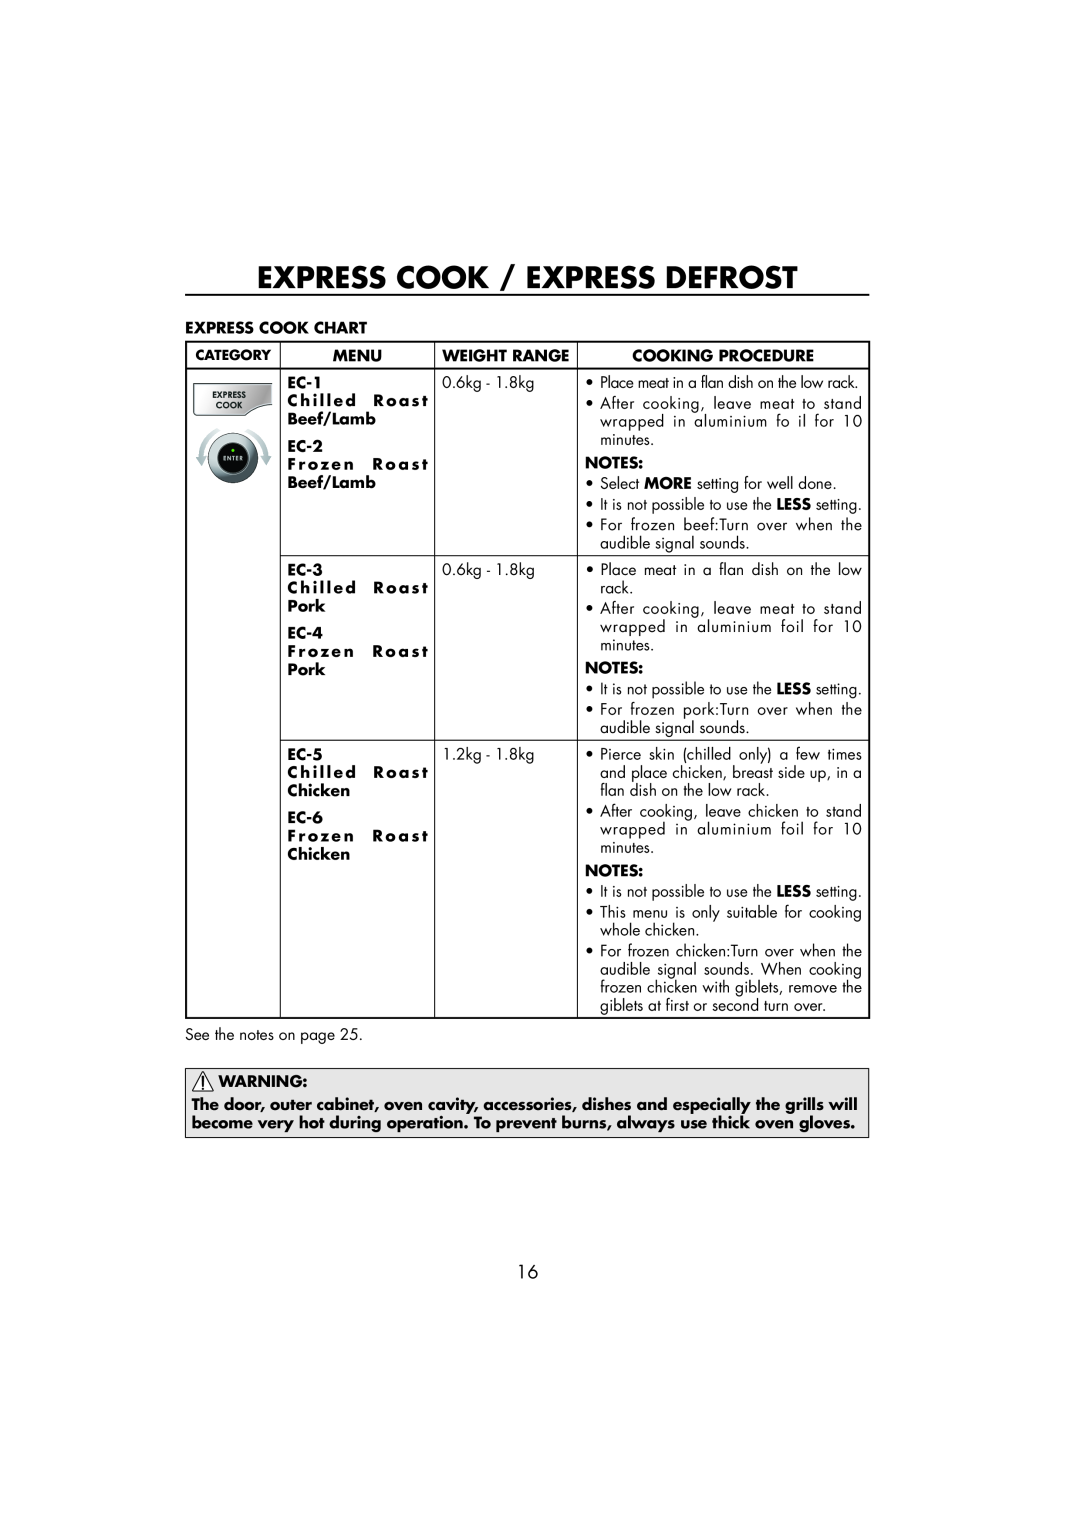 Sharp R-890SLM Express Cook / Express Defrost, Express Cook Chart, Menu, Weight Range, Cooking Procedure, EC-1, Beef/Lamb 